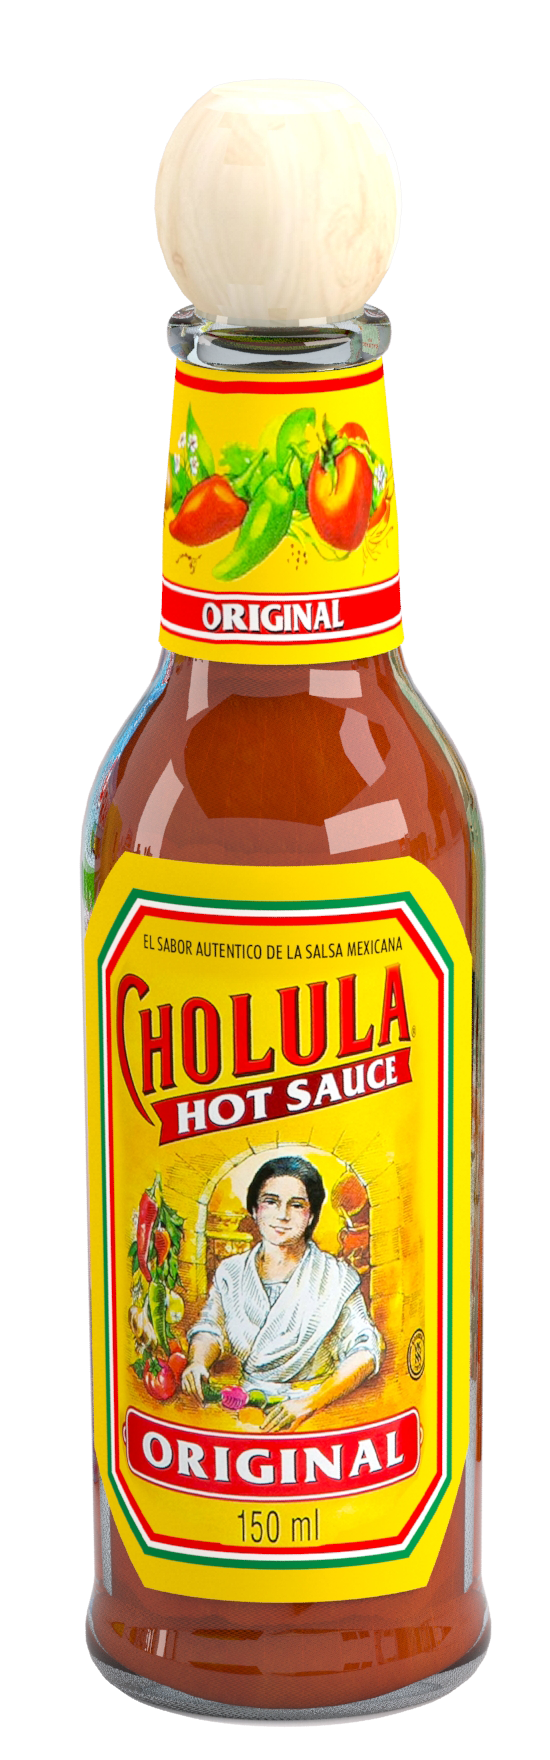 Un pot de sauce mexicaine Cholula